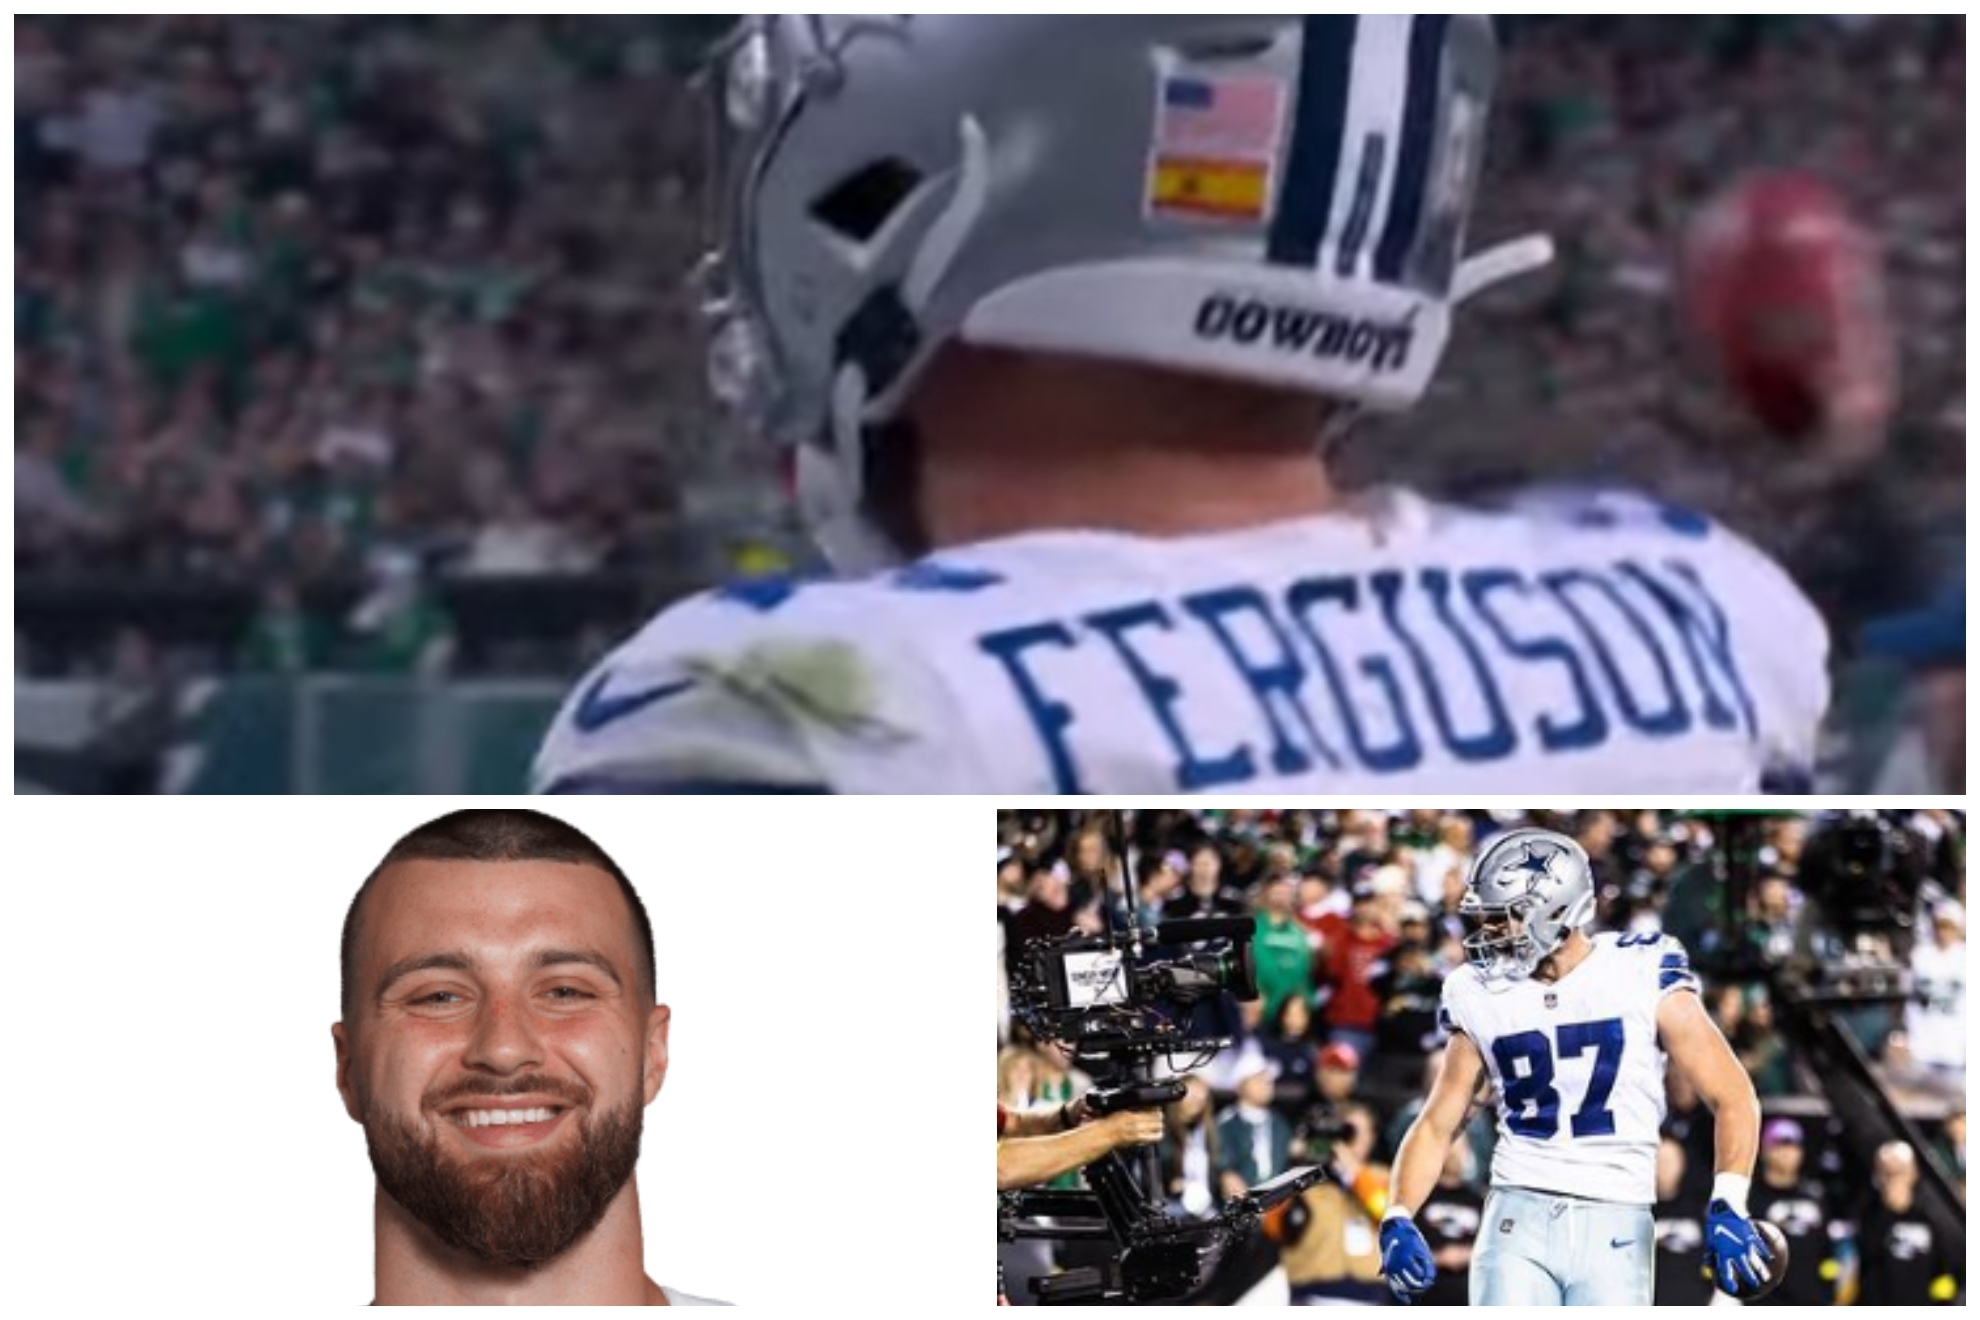 El 'español' que se sale con los Dallas Cowboys y lleva la bandera en su casco